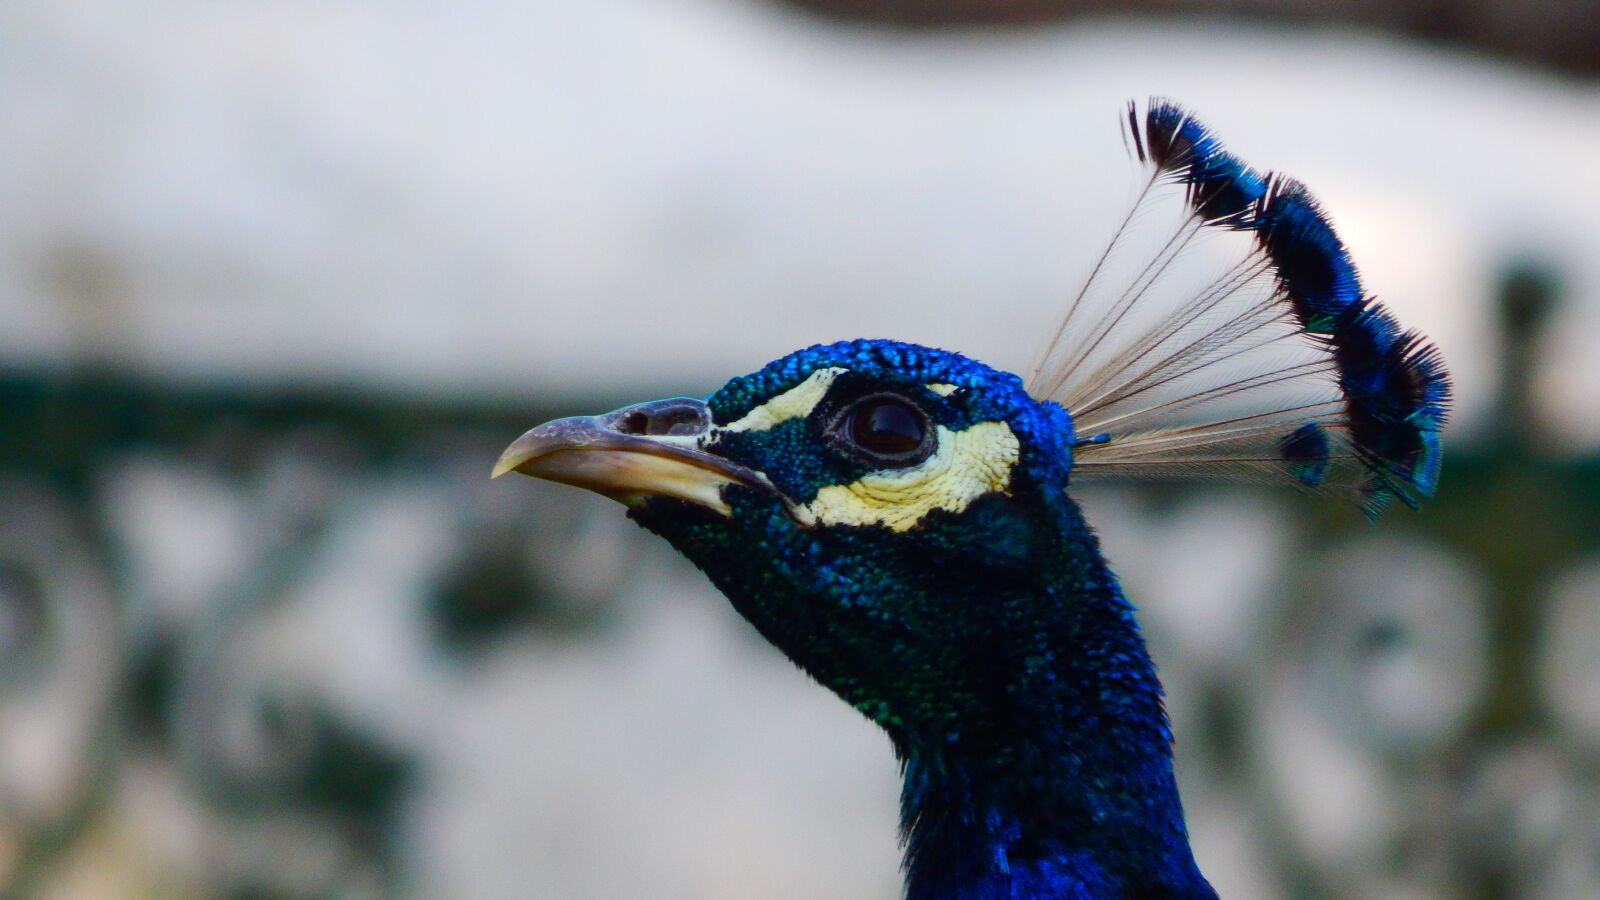 Nikon Coolpix L830 sample photo. Peacock, bird, fowl photography